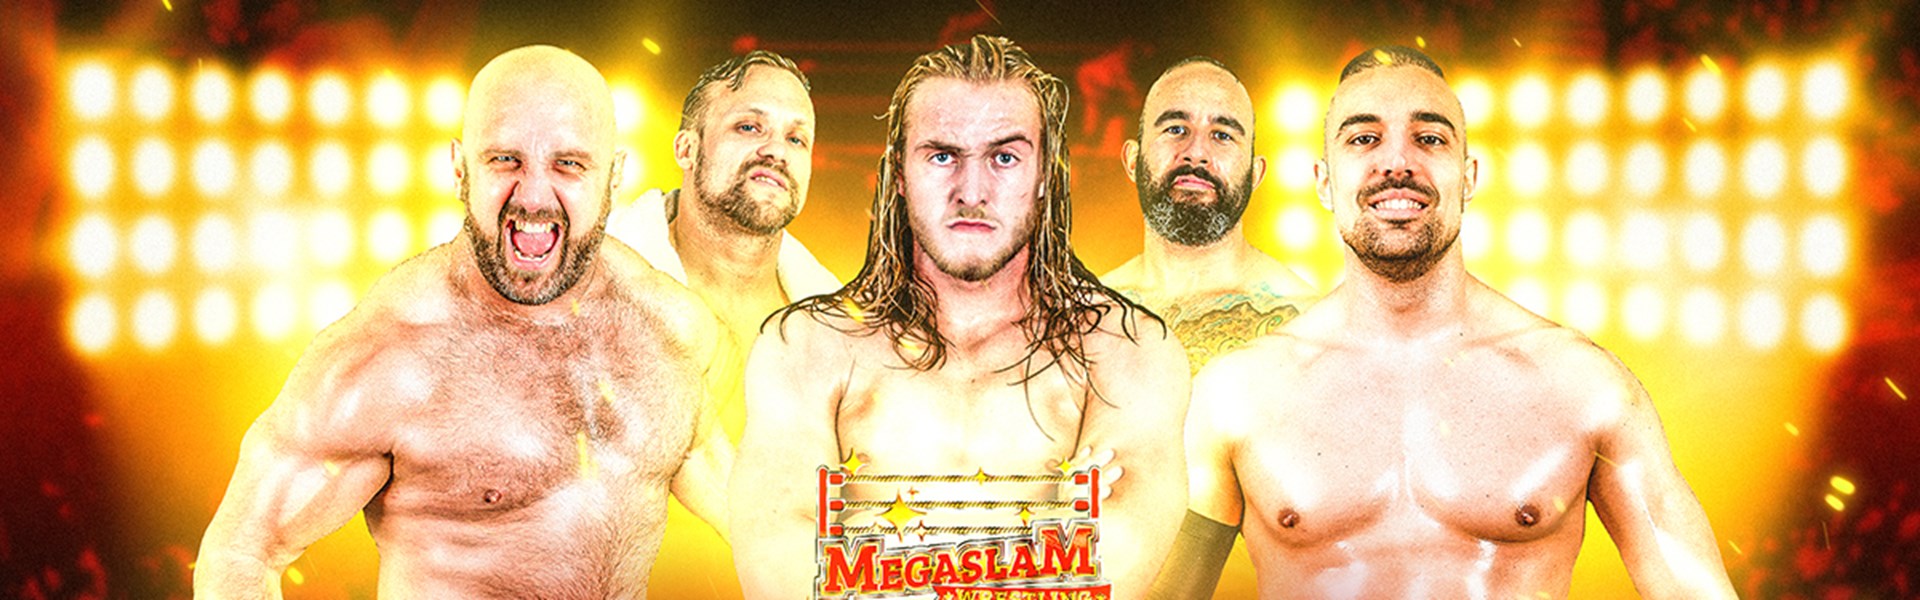 Megaslam Wrestling 2023 Live Tour